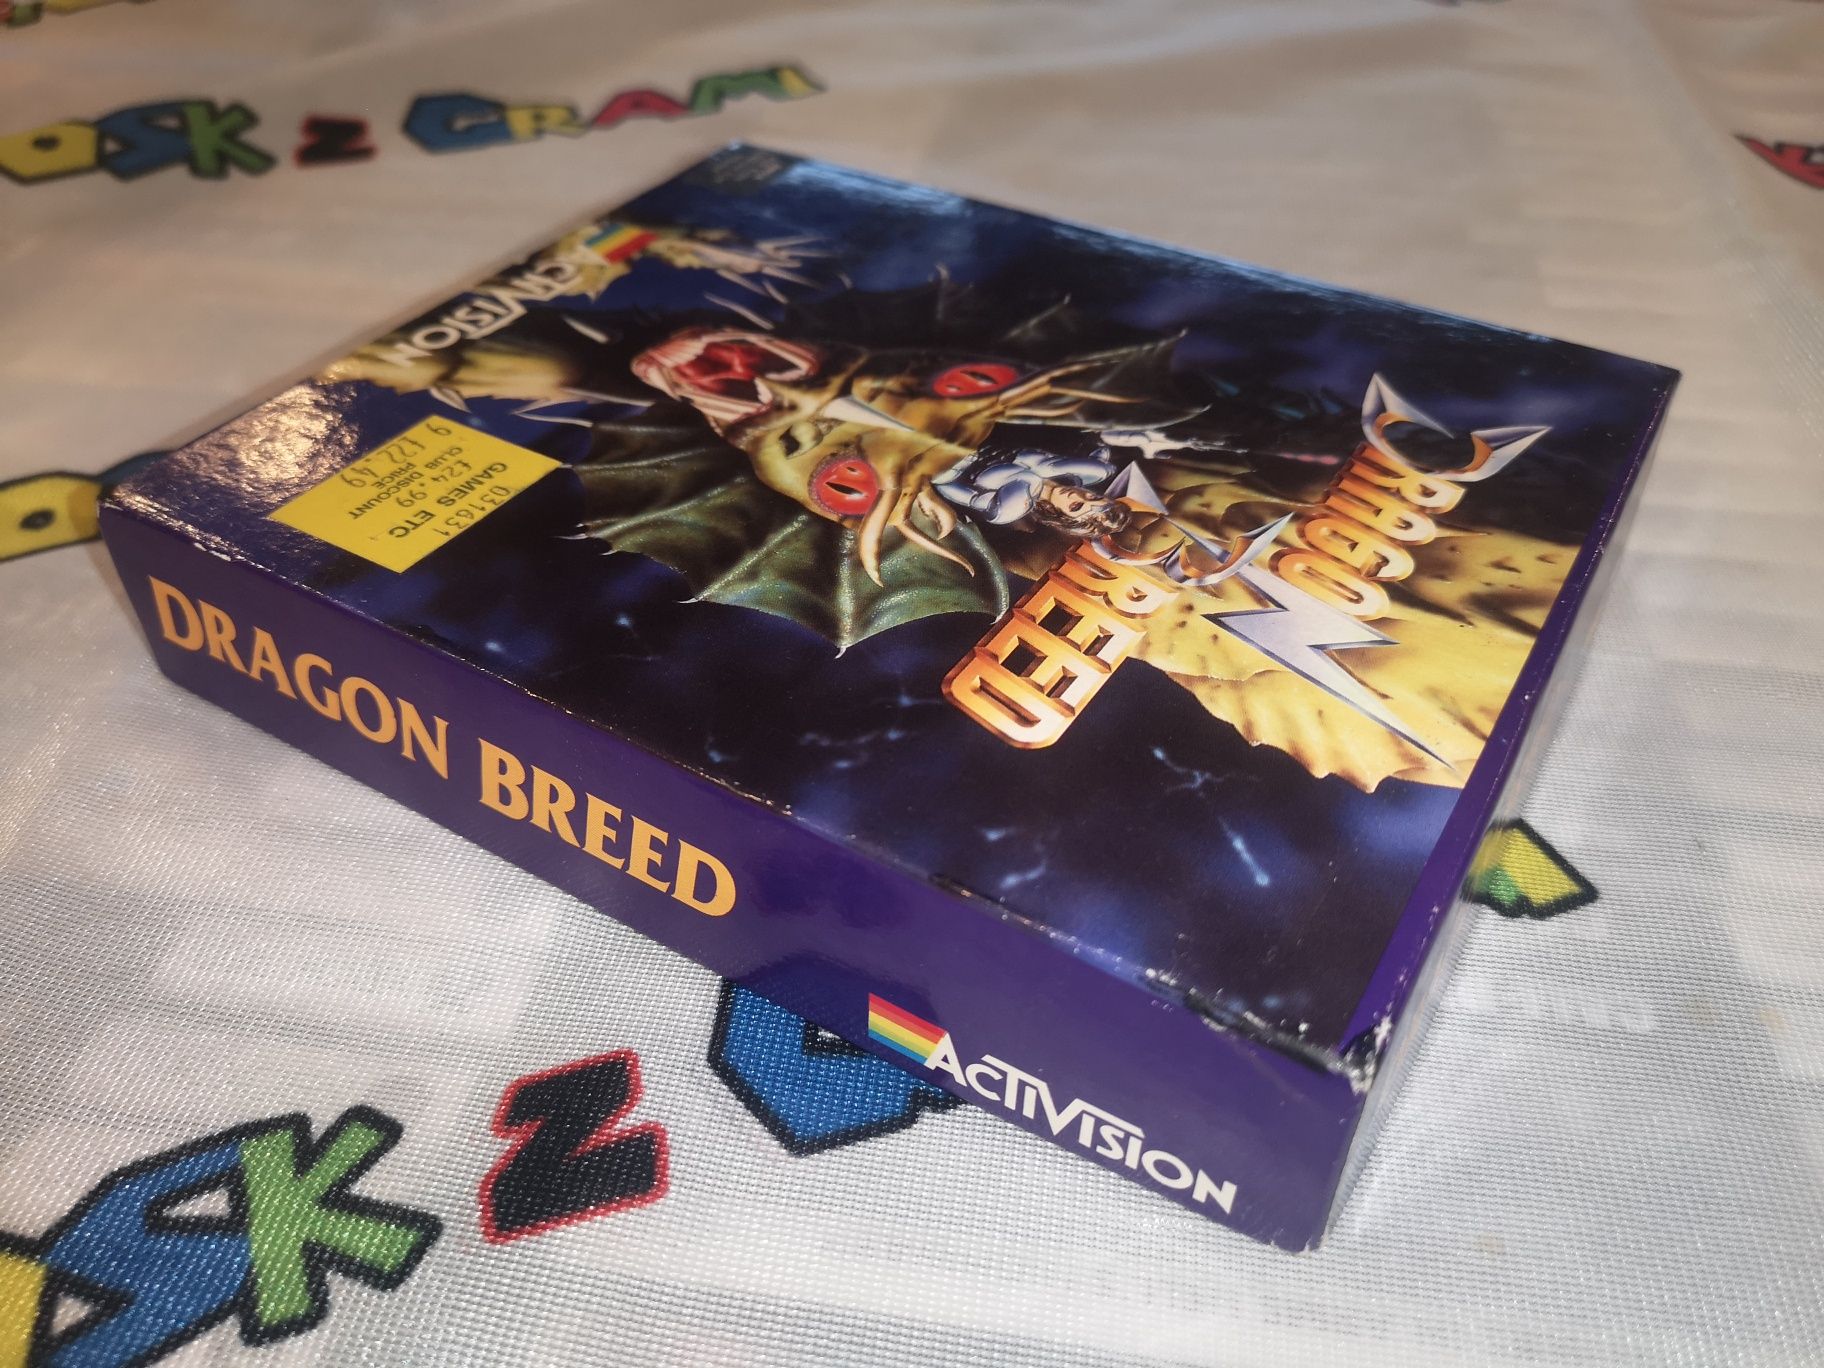 Dragon Breed AMIGA BOX Retro (1989) od kolekcjonera SKLEP